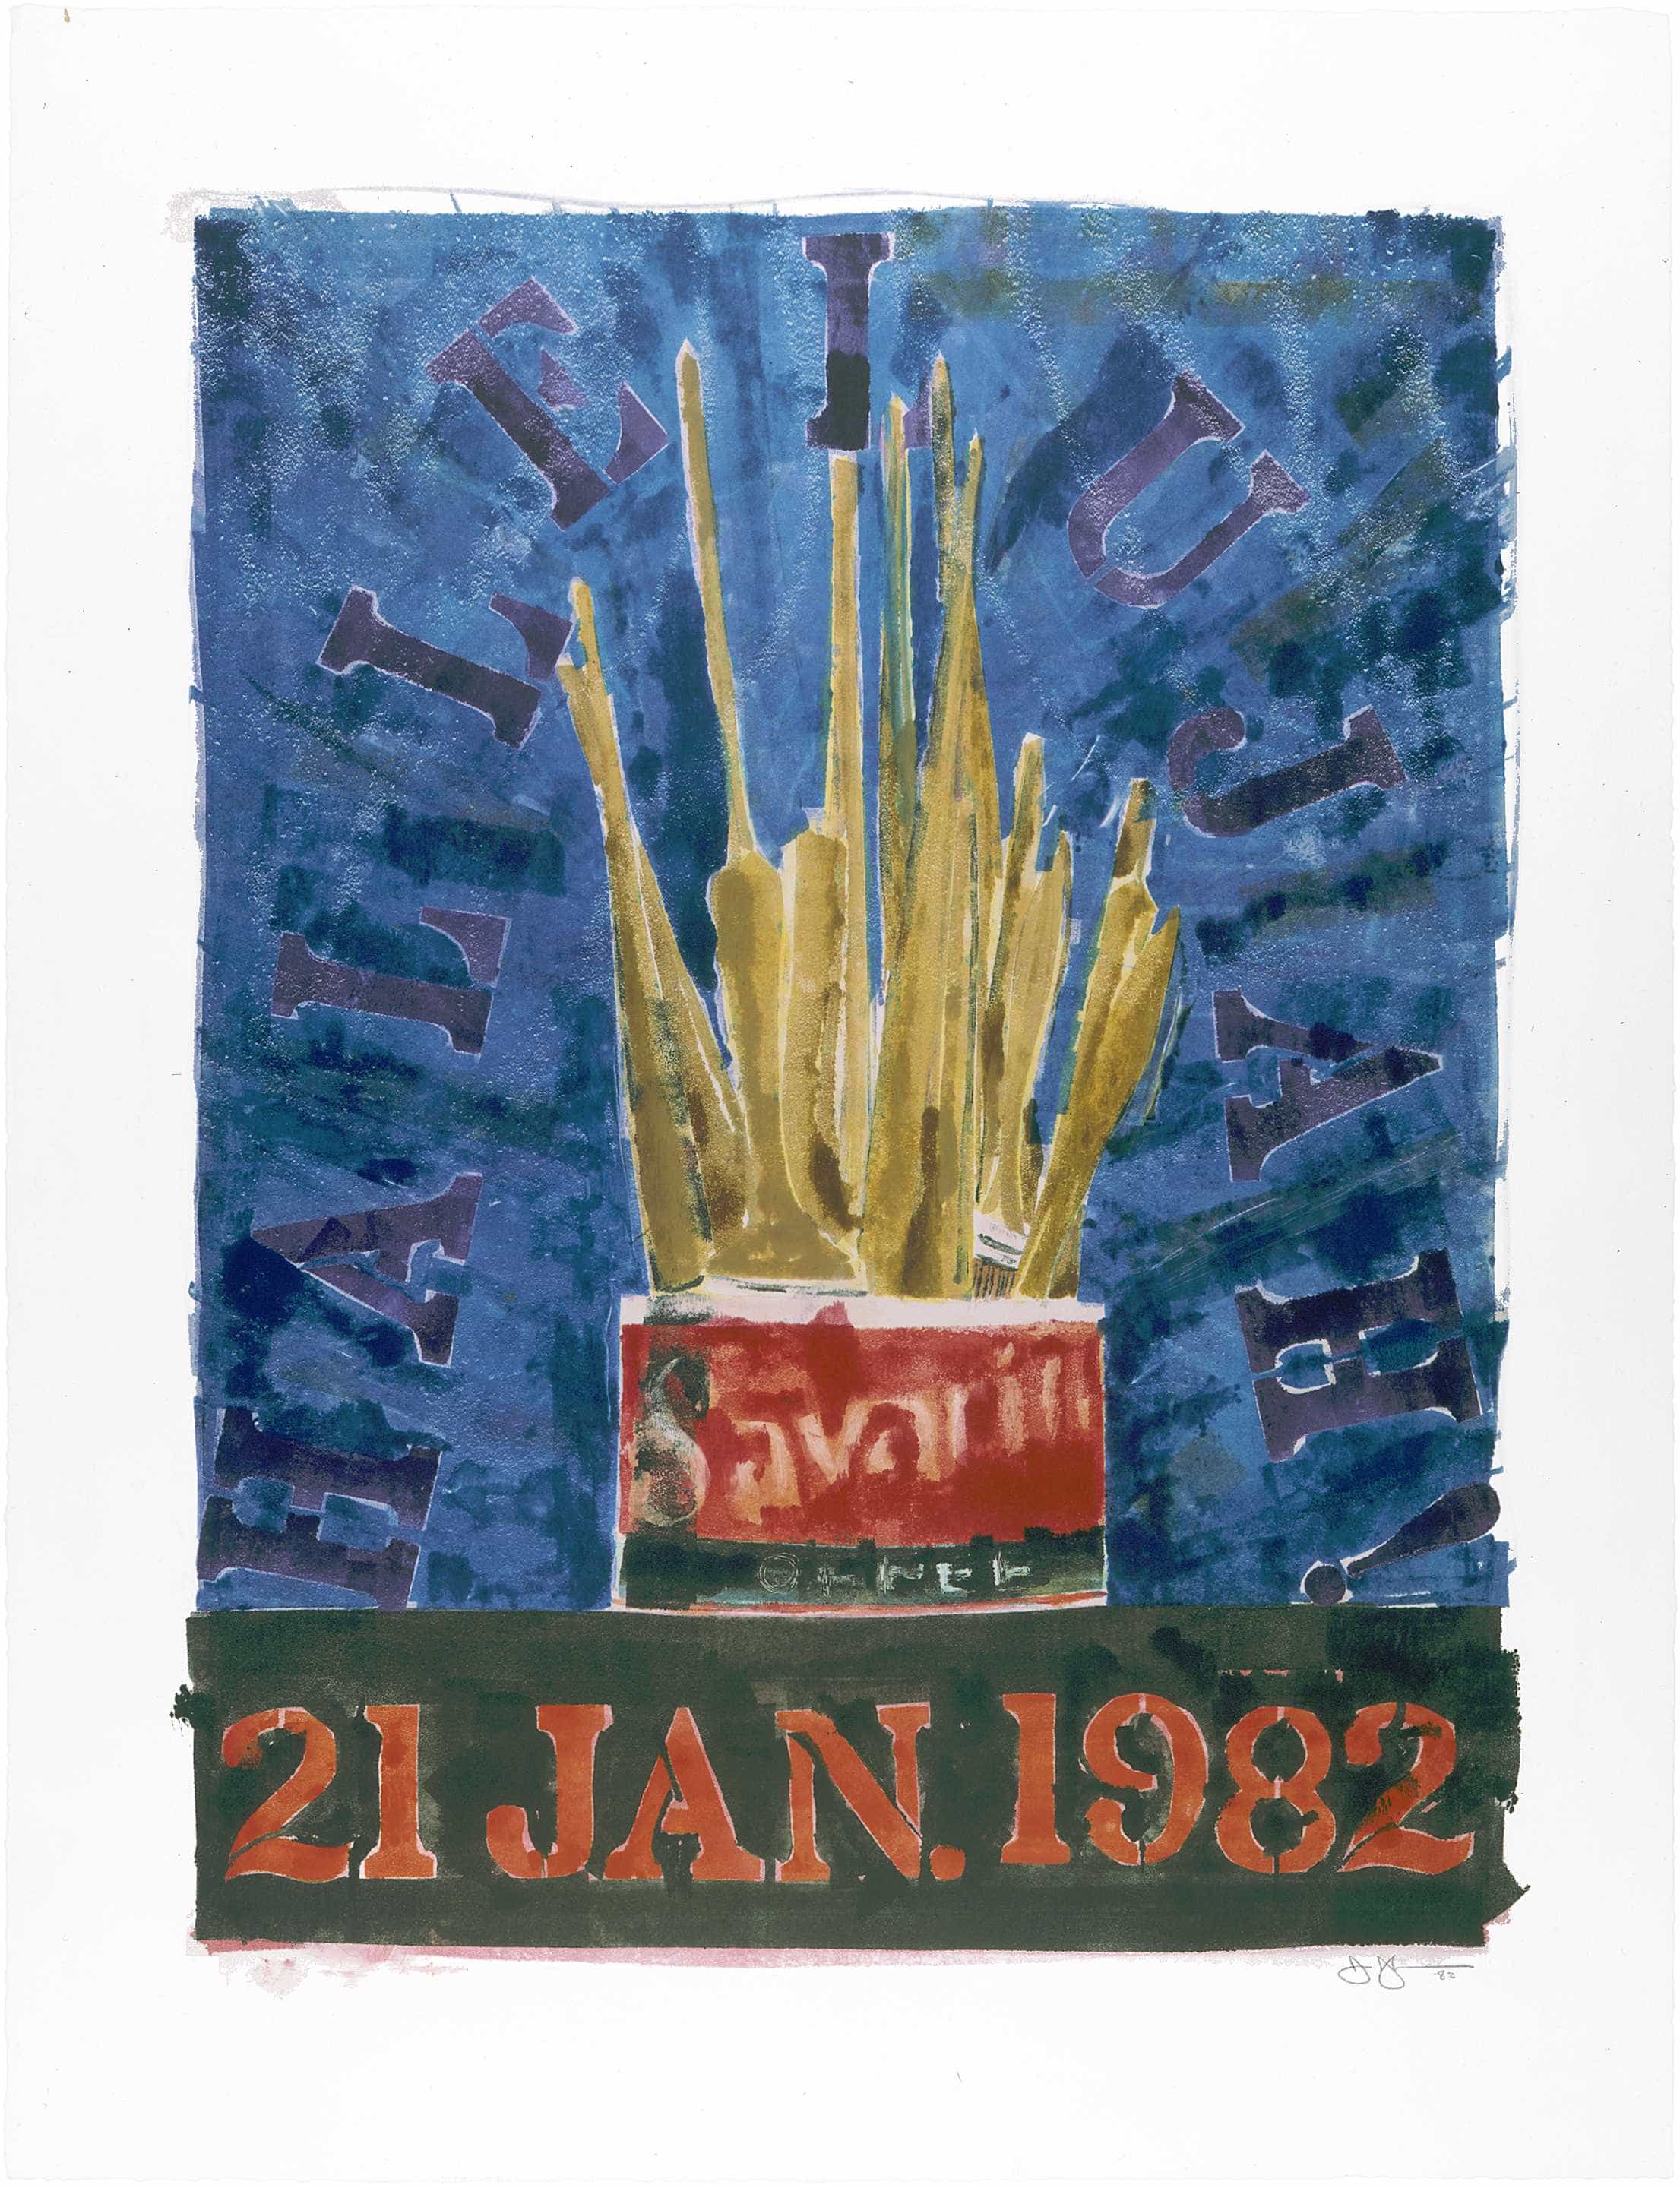 Jasper Johns, Savarin, 1982